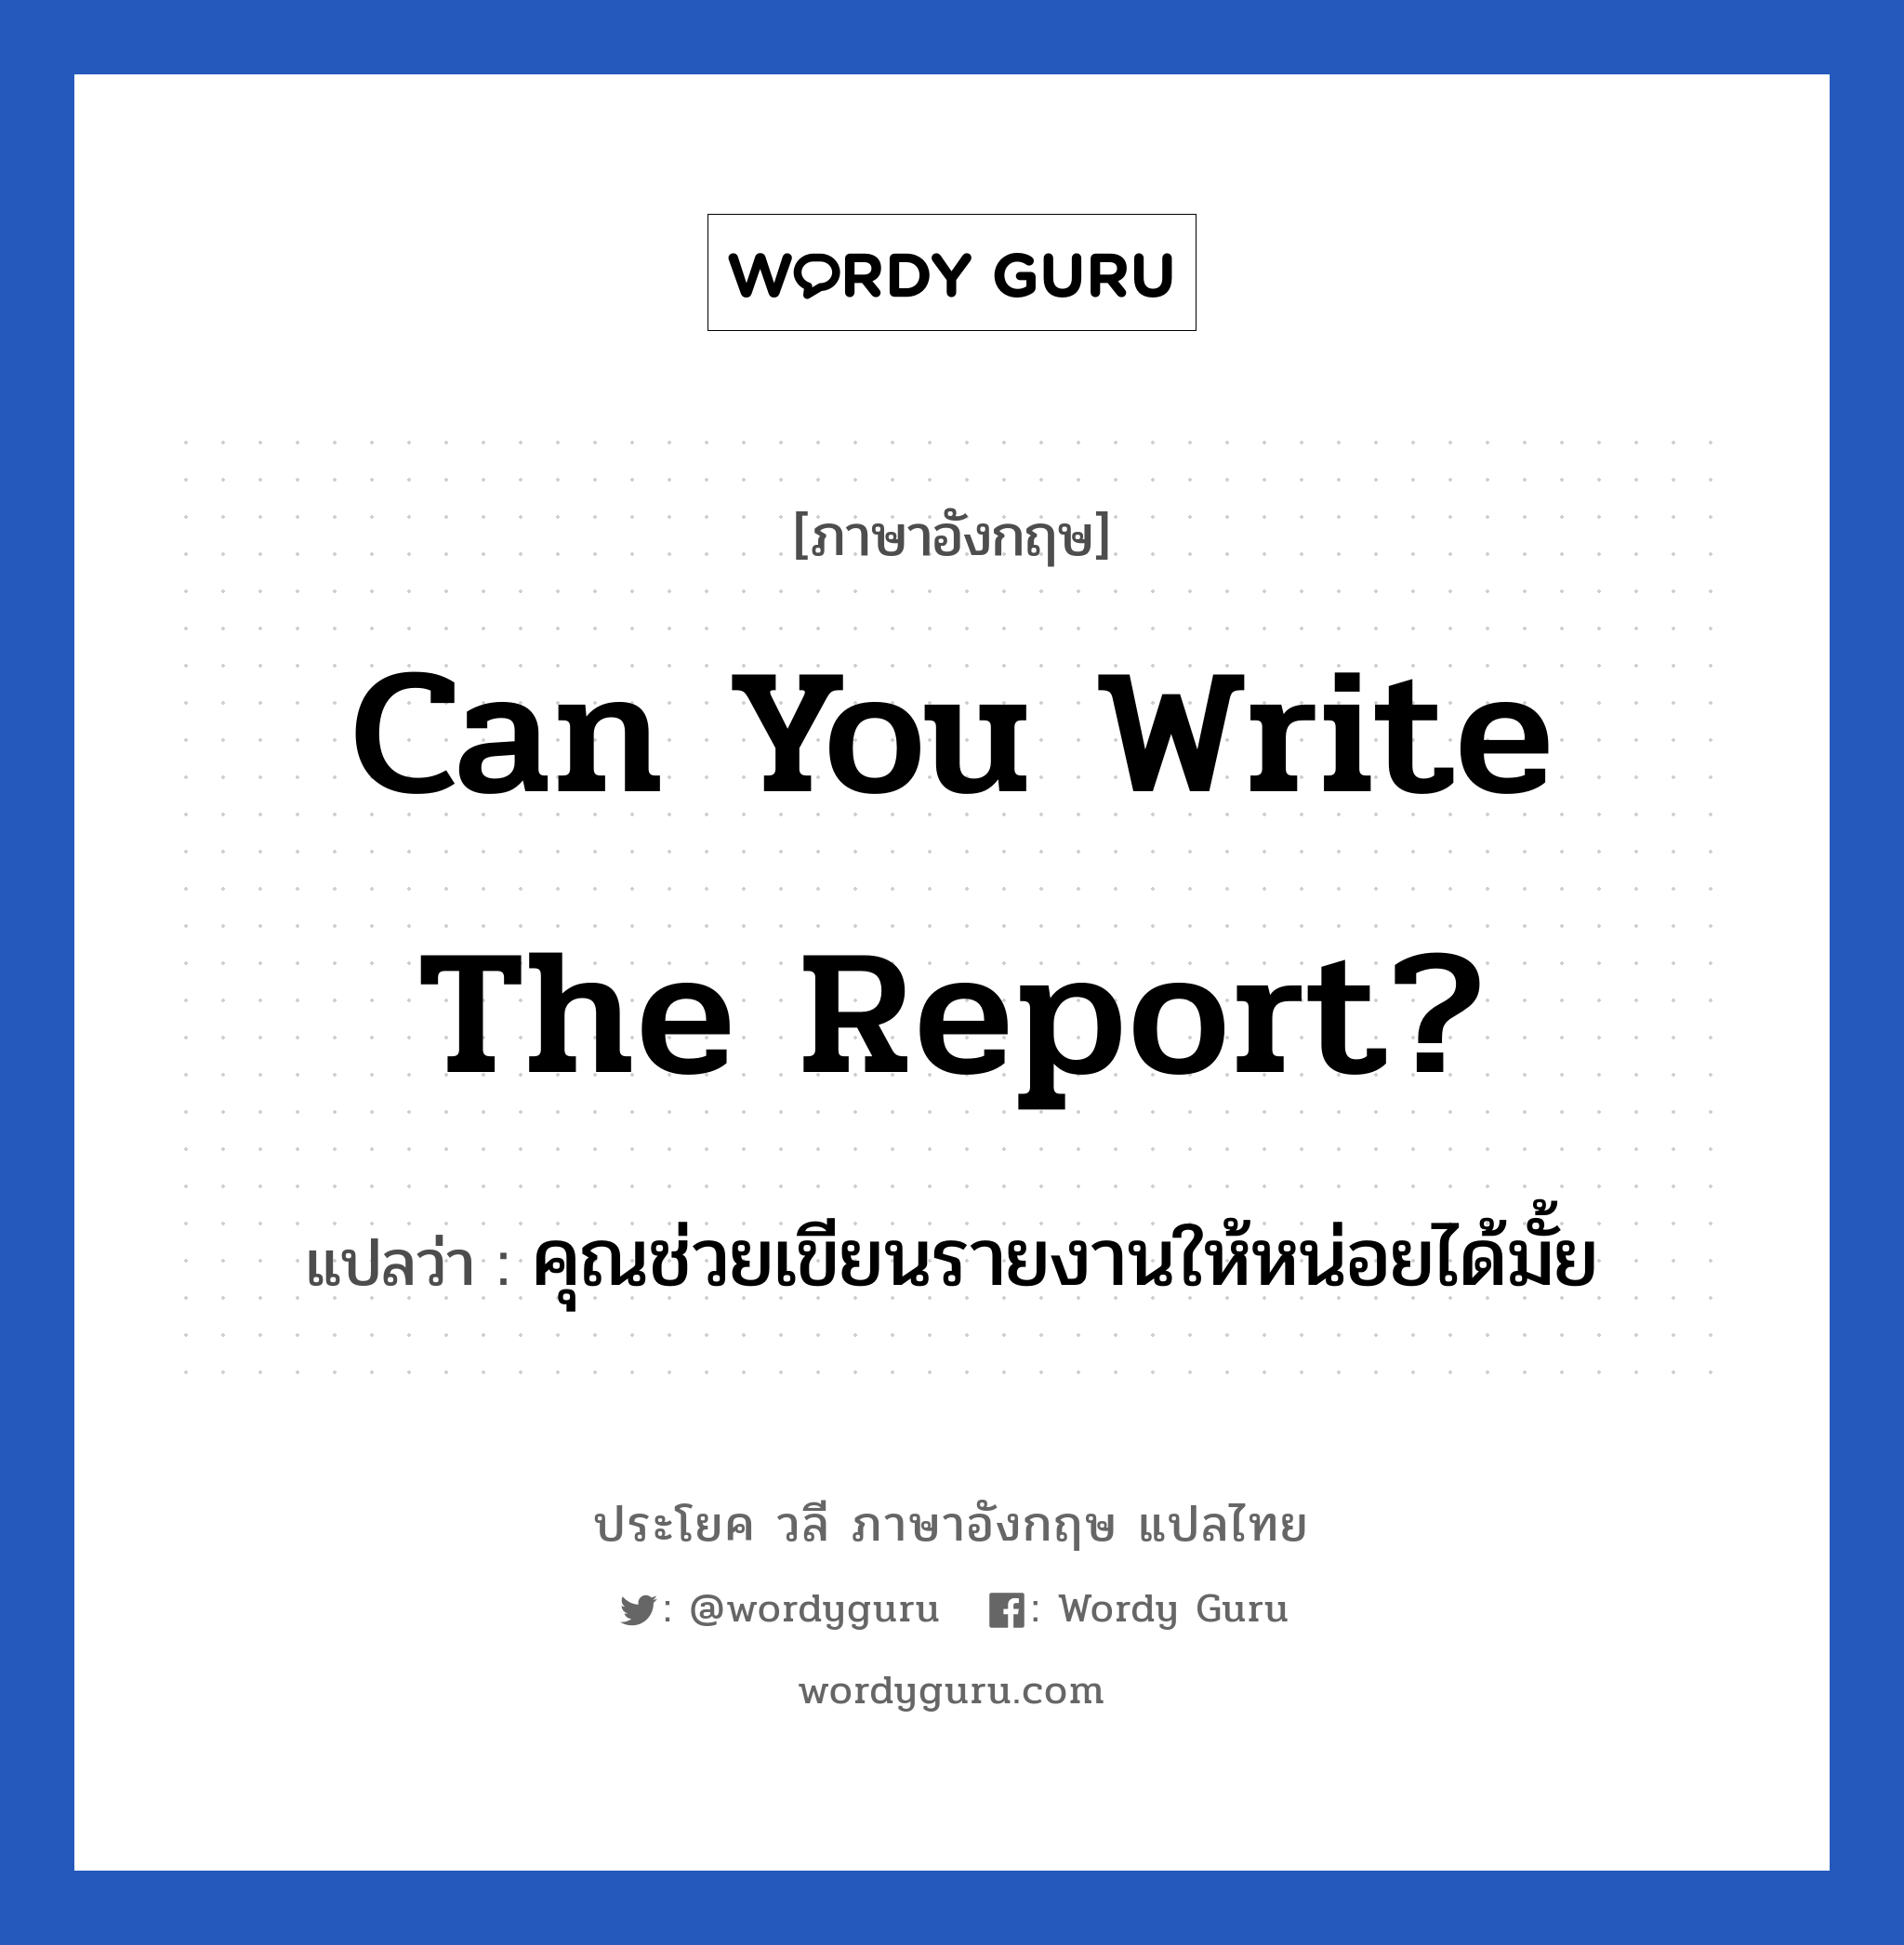 Can you write the report? แปลว่า?, วลีภาษาอังกฤษ Can you write the report? แปลว่า คุณช่วยเขียนรายงานให้หน่อยได้มั้ย หมวด ในที่ทำงาน